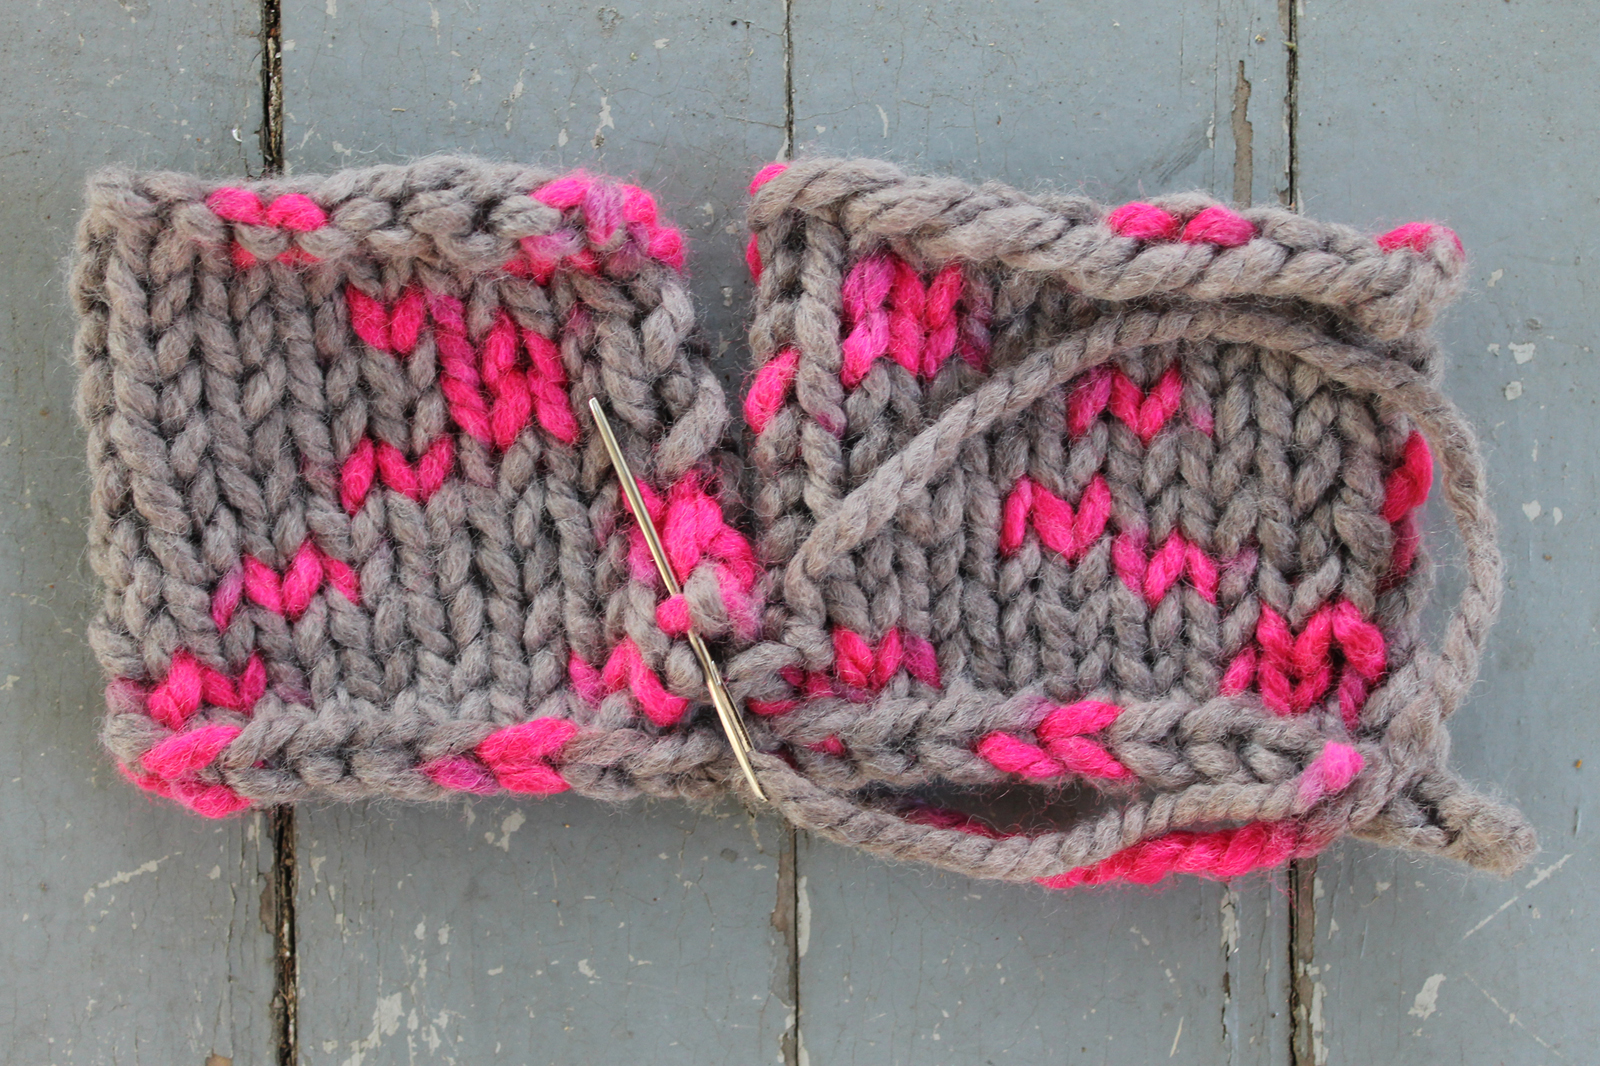 Seaming mattress stitch in knitting